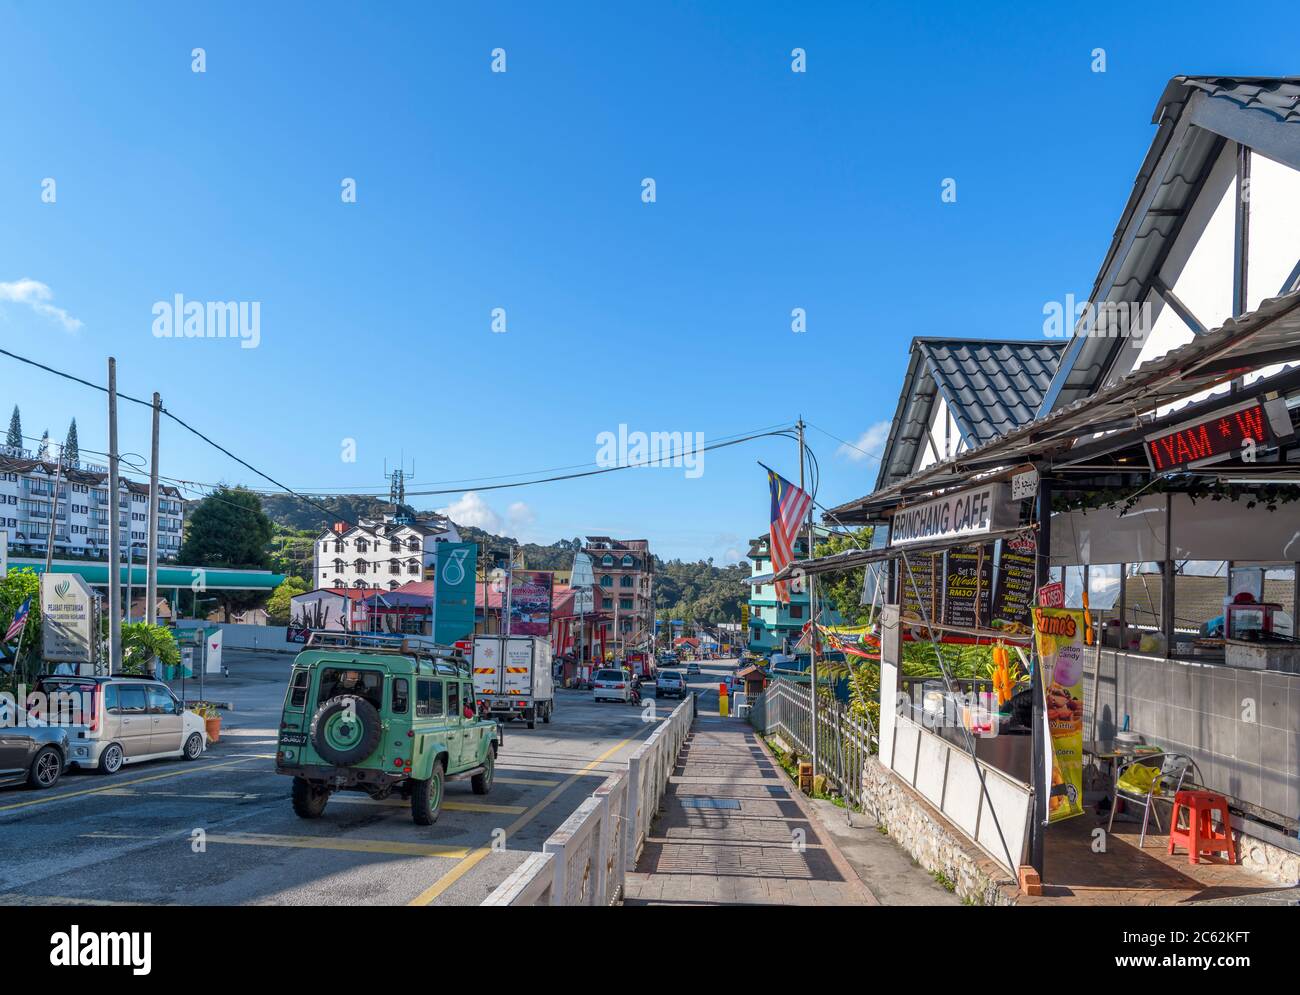 The town centre, Brinchang, Cameron Highlands, Malaysia Stock Photo